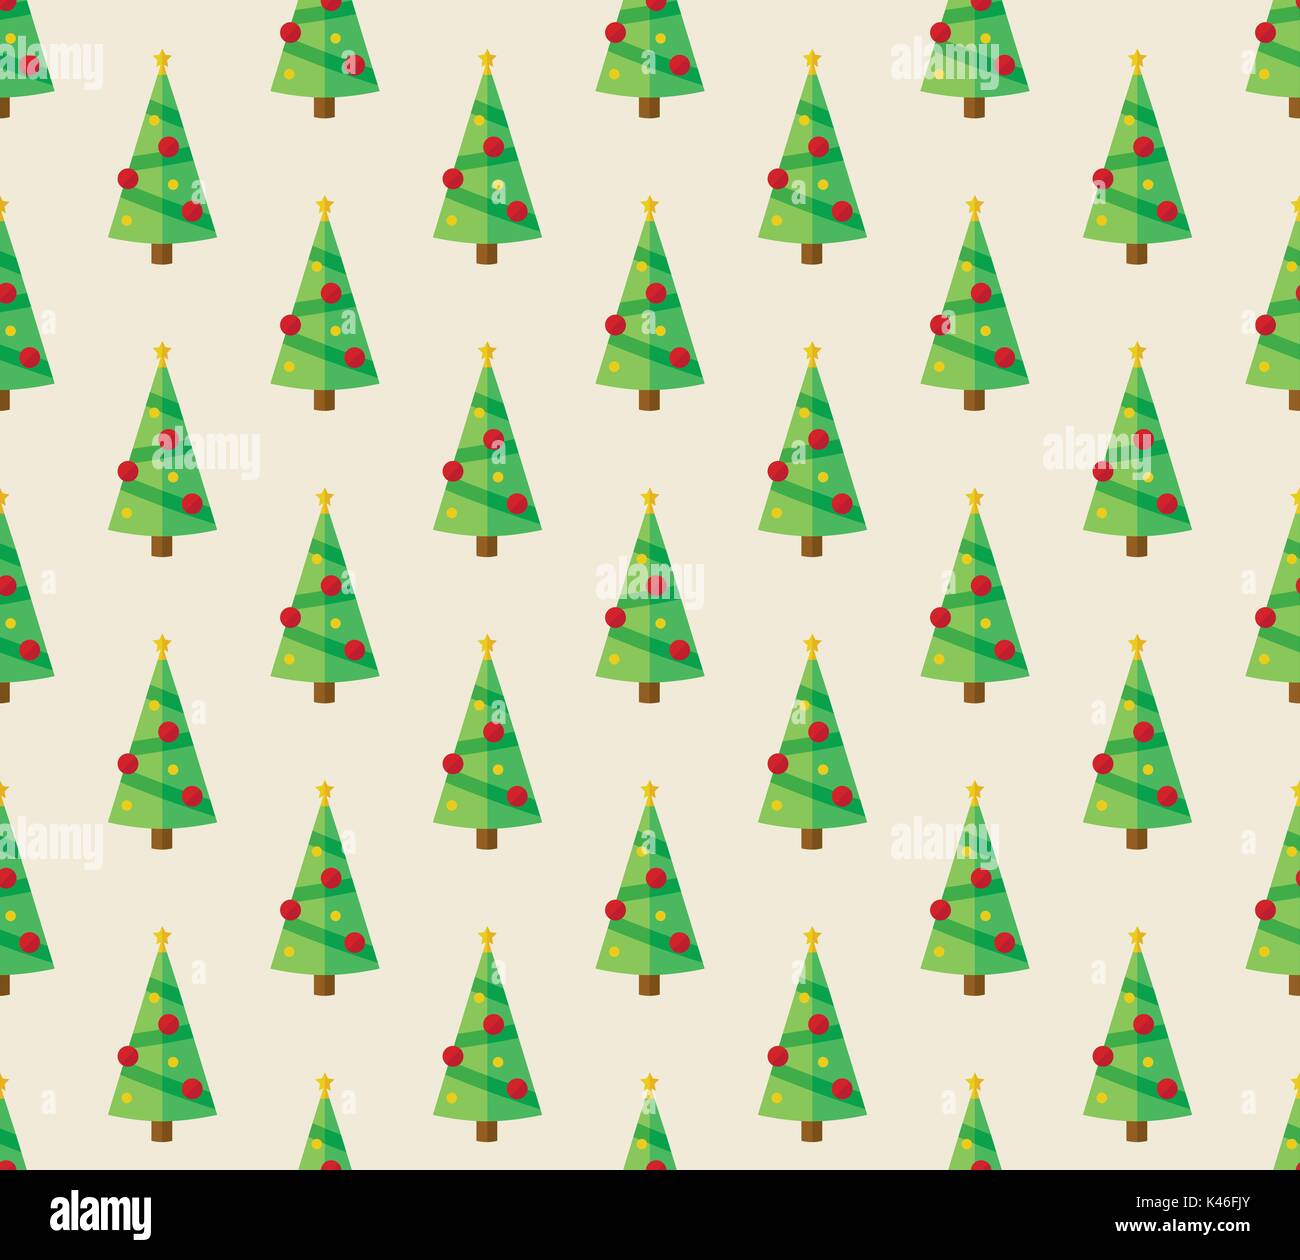 Nahtlose Muster mit flachen Design Weihnachtsbaum Wiederholung Stock Vektor